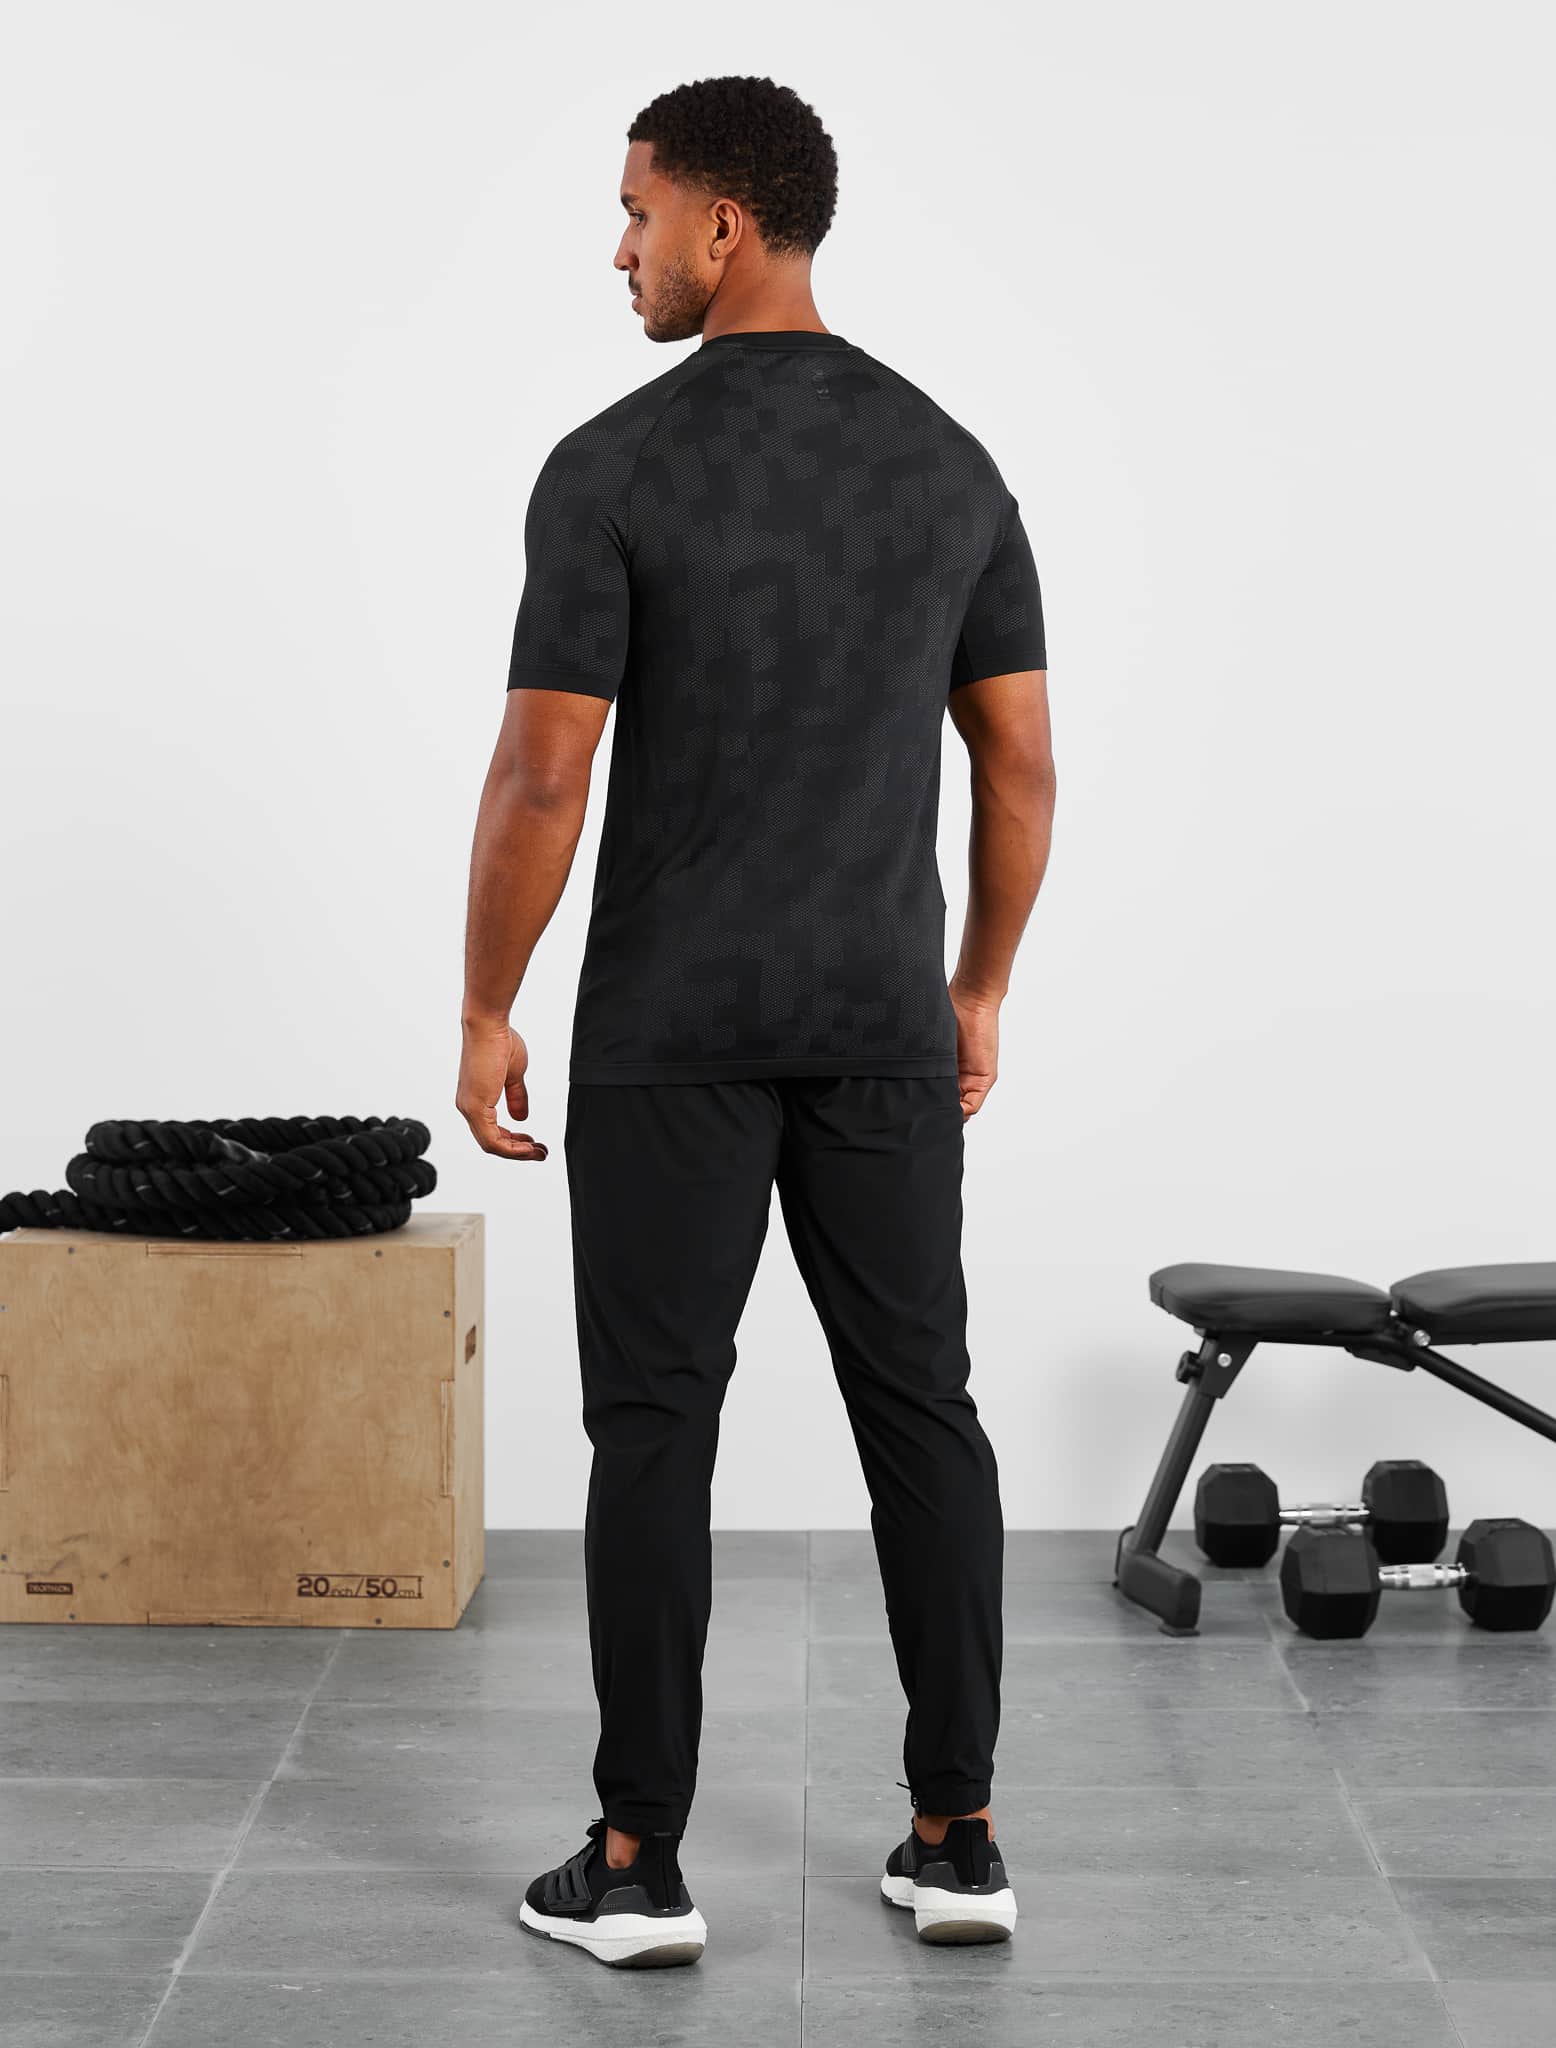 Camo Seamless T-Shirt / Black Pursue Fitness 6